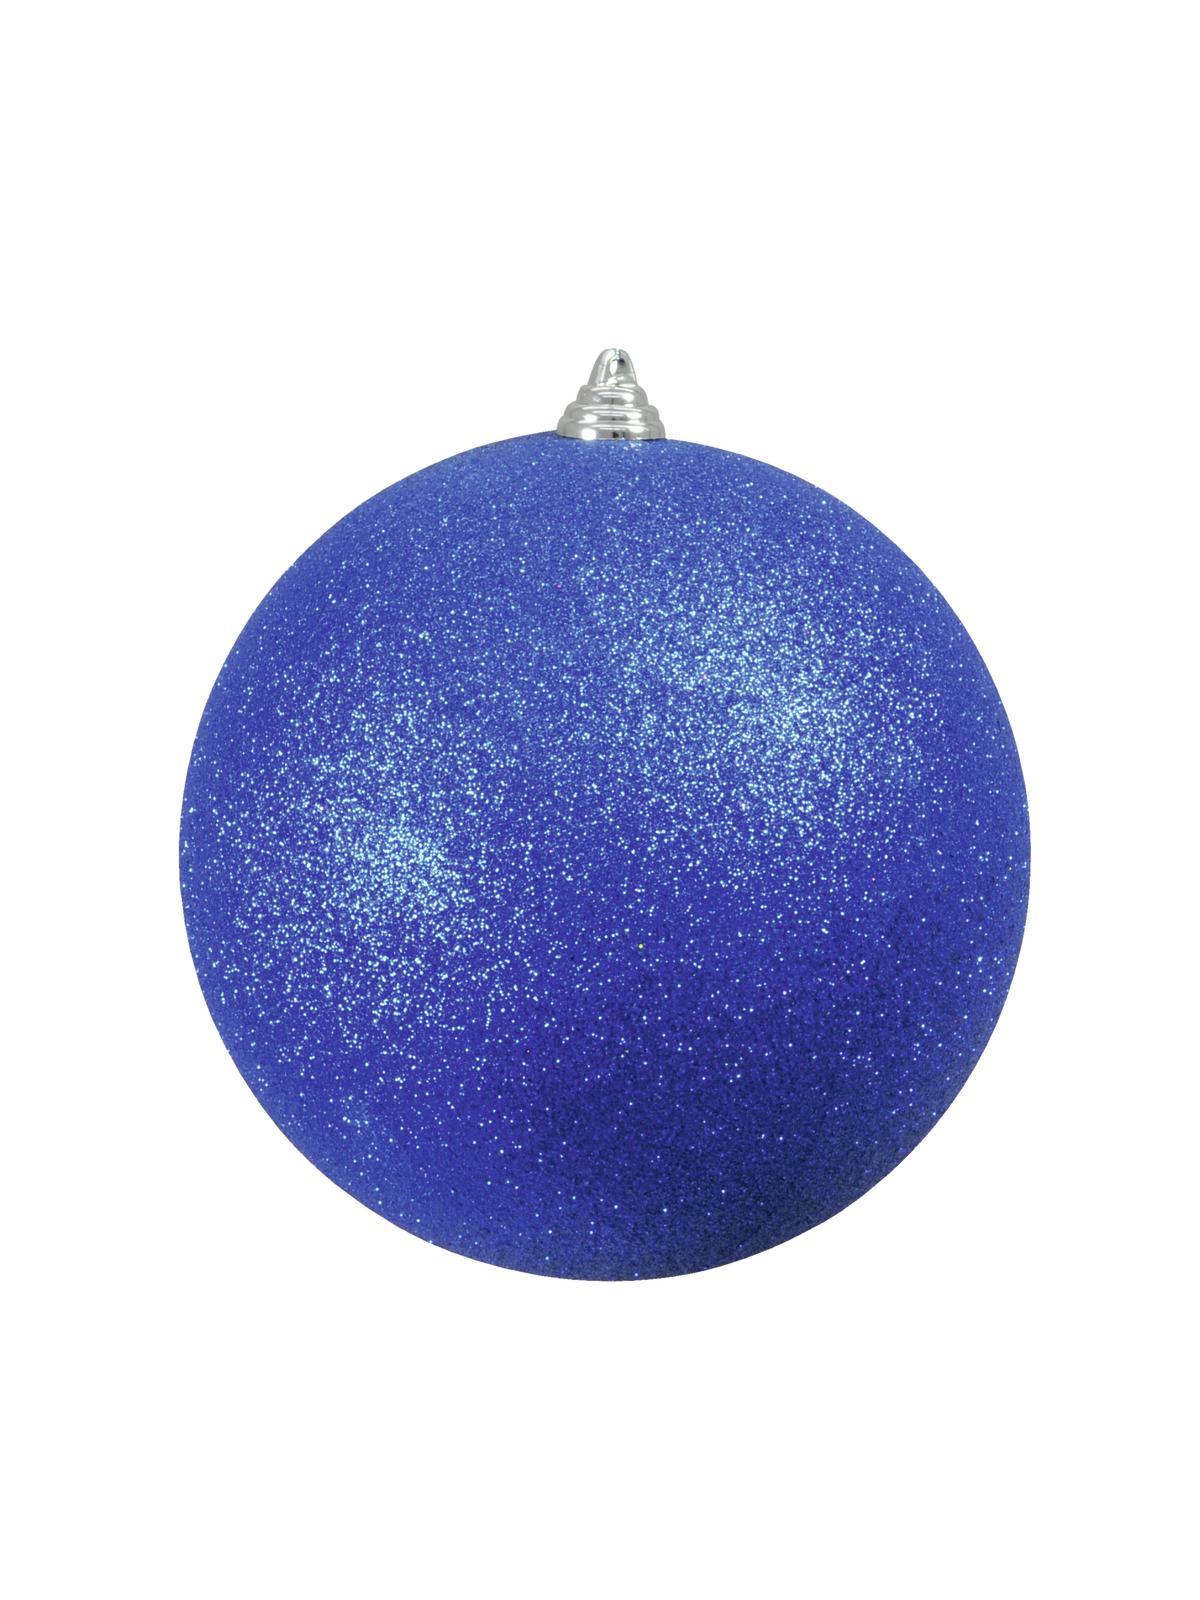 Vánoční ozdoba 20cm, modrá koule s glitry